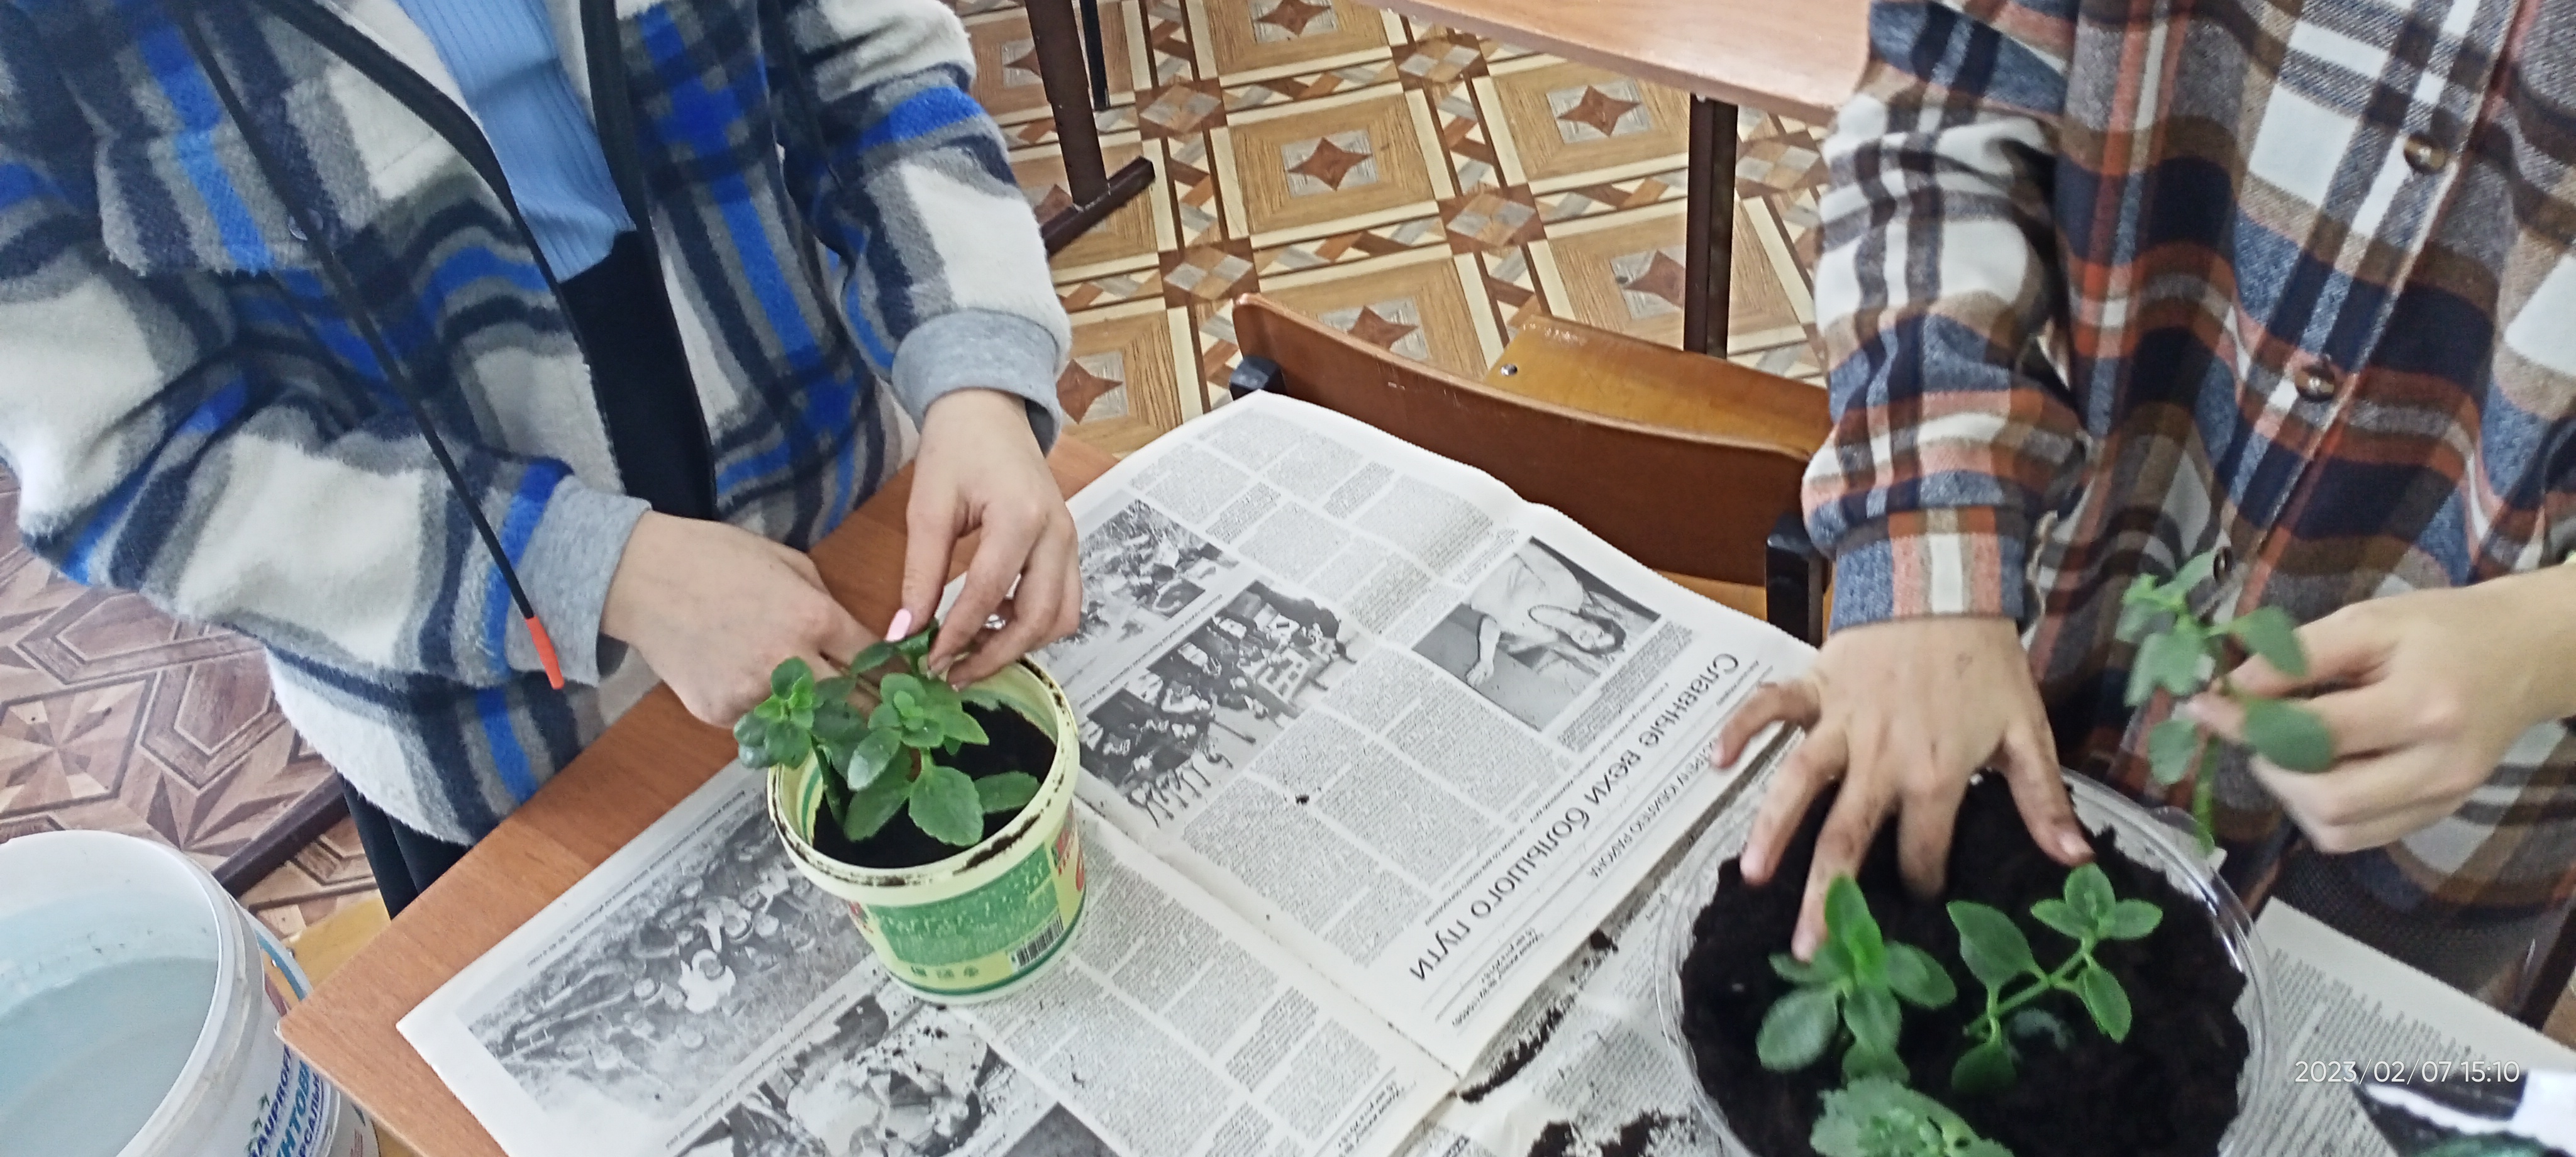 Практическая деятельность по Дополнительной общеобразовательной программе естественнонаучной направленности   «Растениеводство» дарит красоту школе.